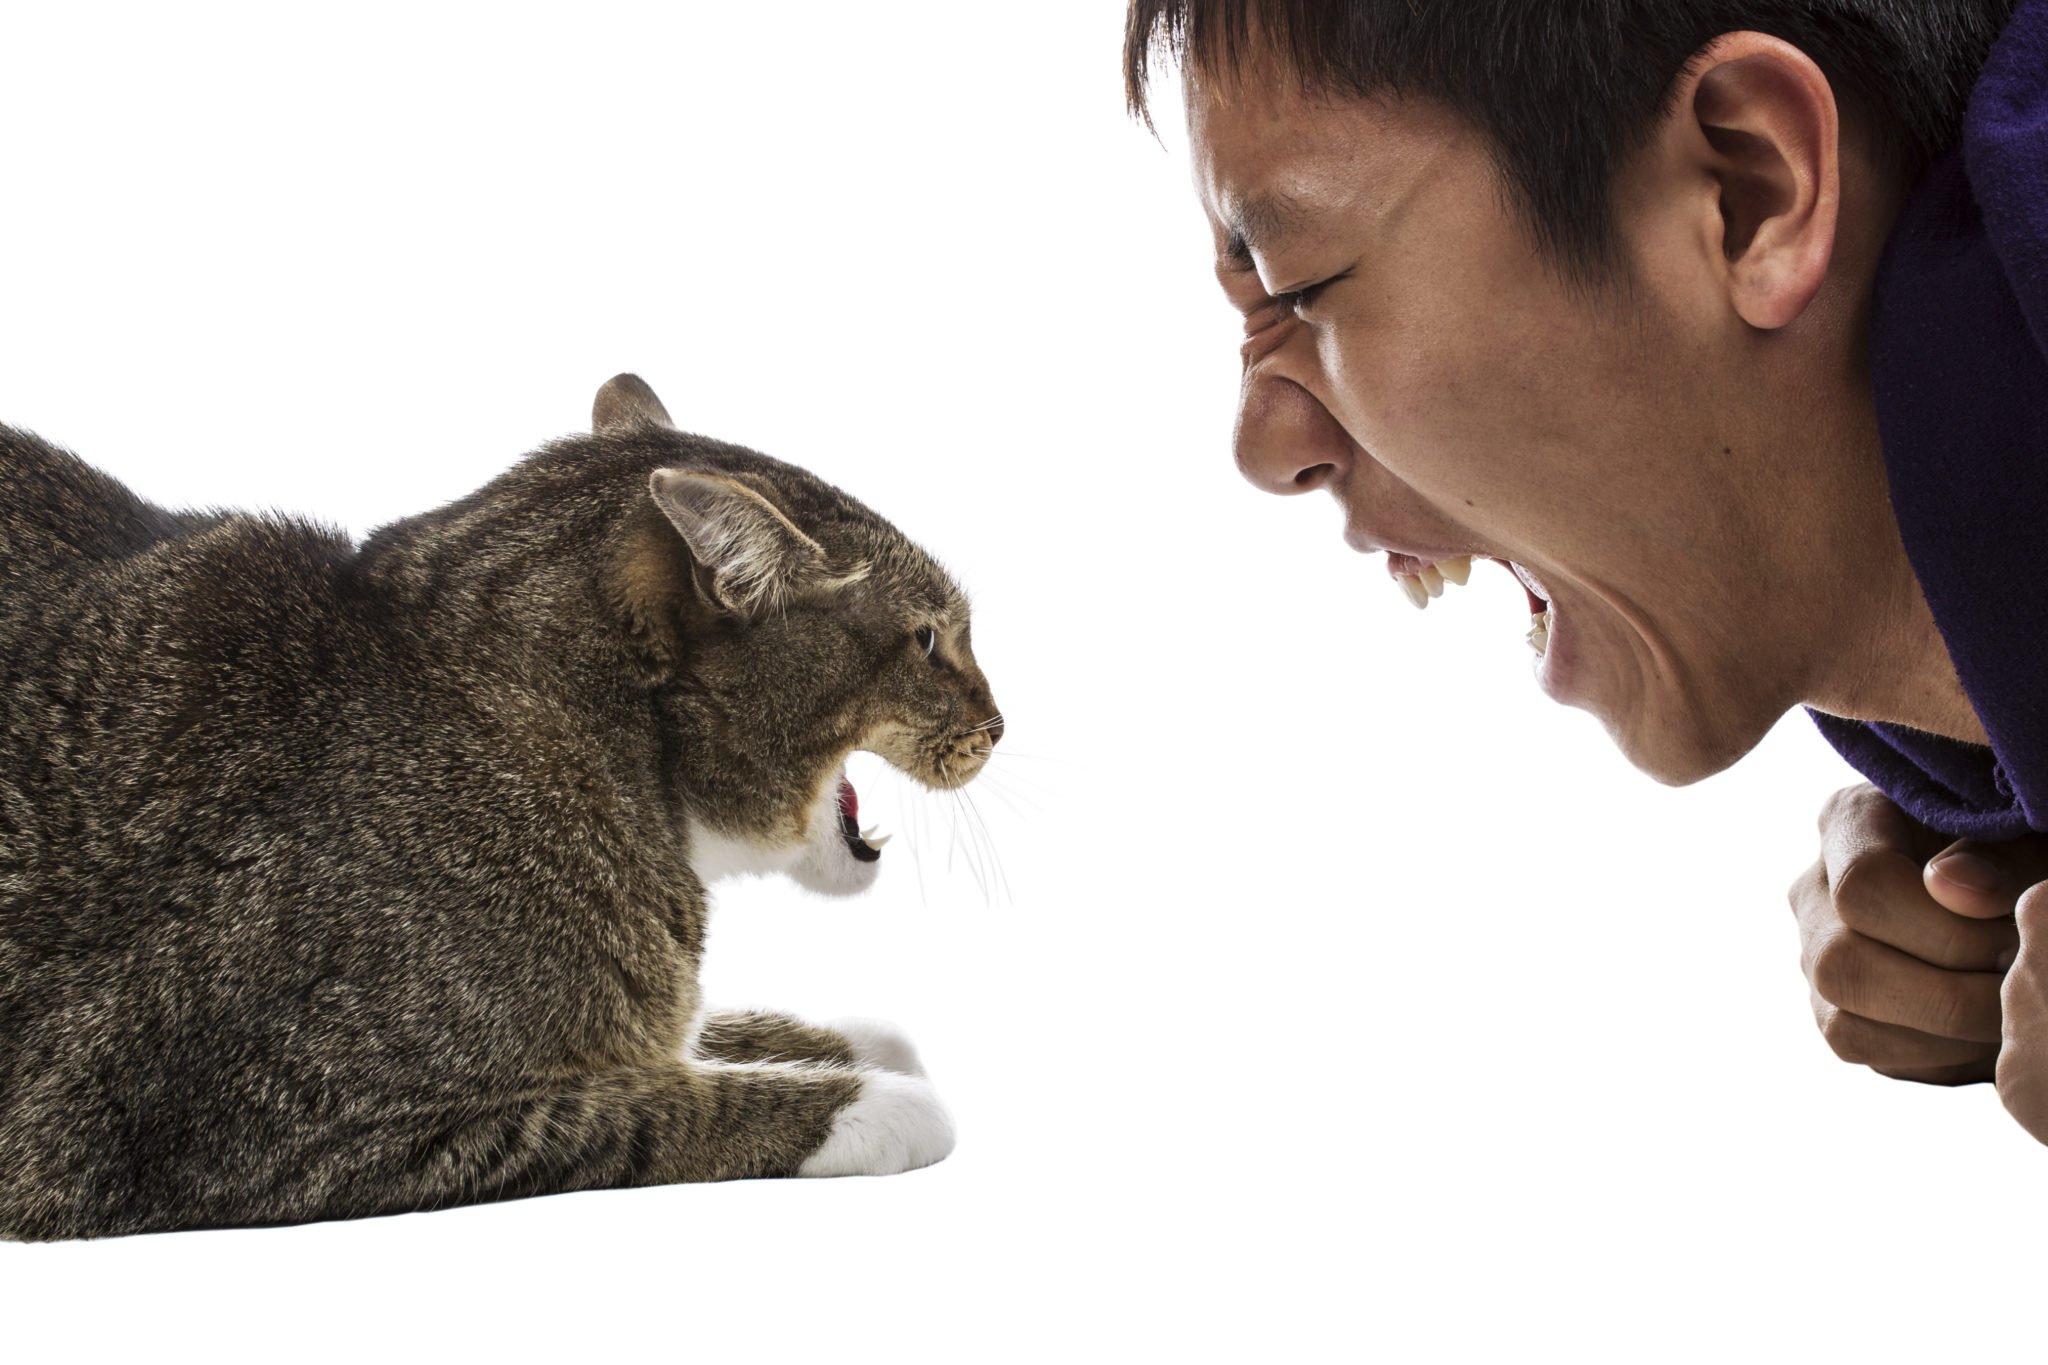 Сильный запах кошки. Агрессия кота. Агрессия животных и людей. Агрессивное животное.